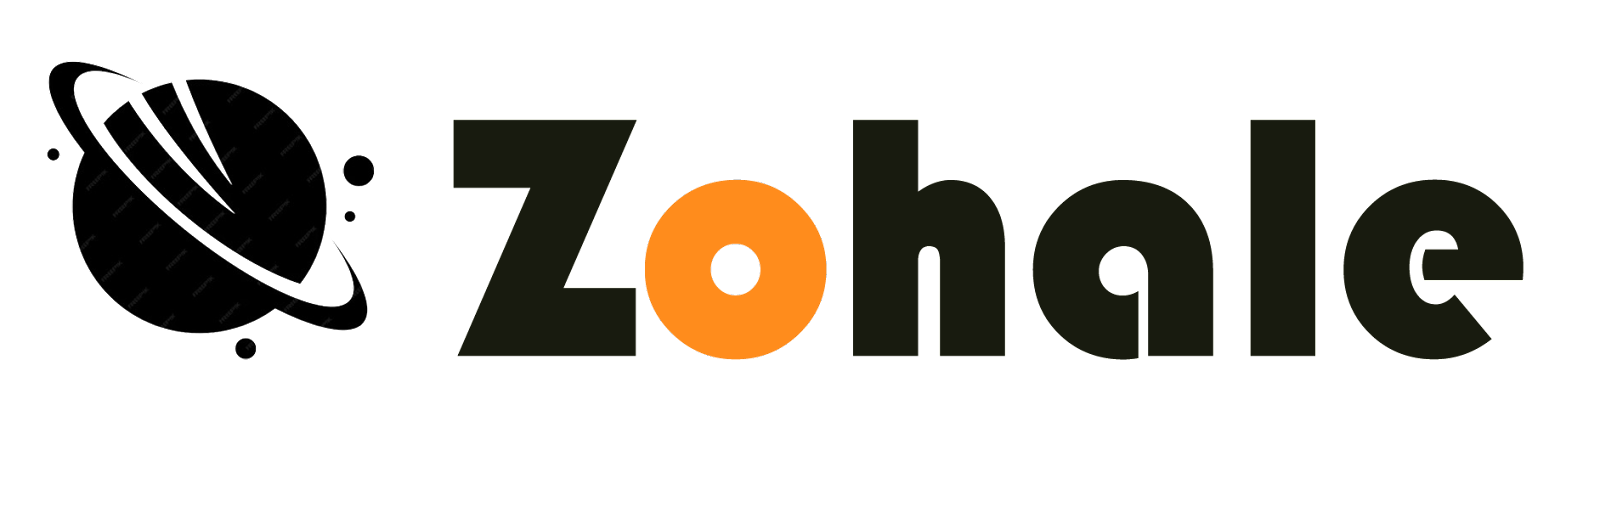 Zohale - Ton chemin vers la réussite scolaire